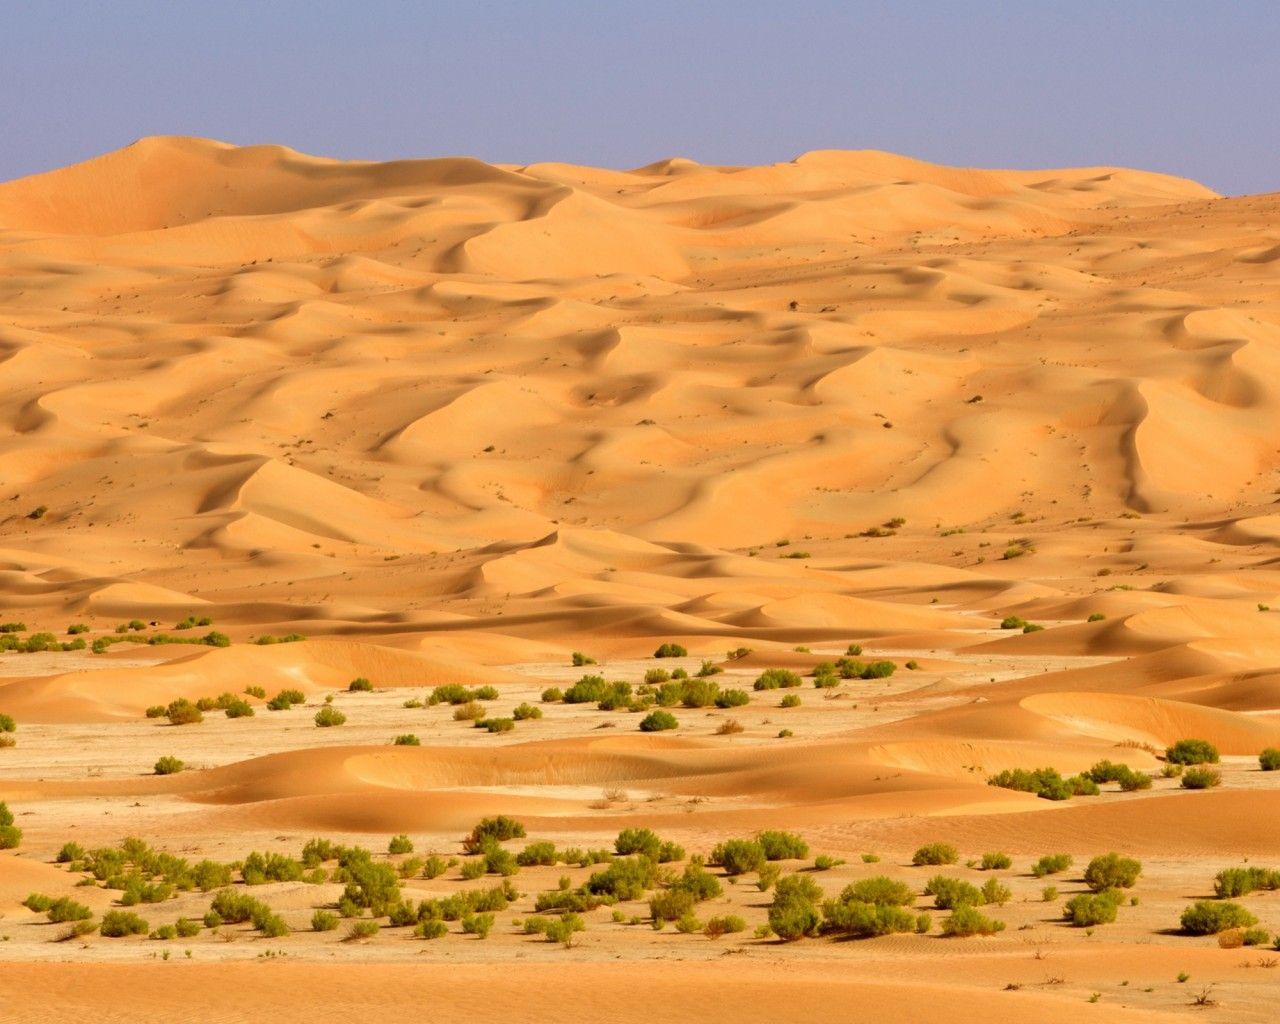 Saudi Arabia Desert, Hd Wallpapers 8640 : Wallpapers13